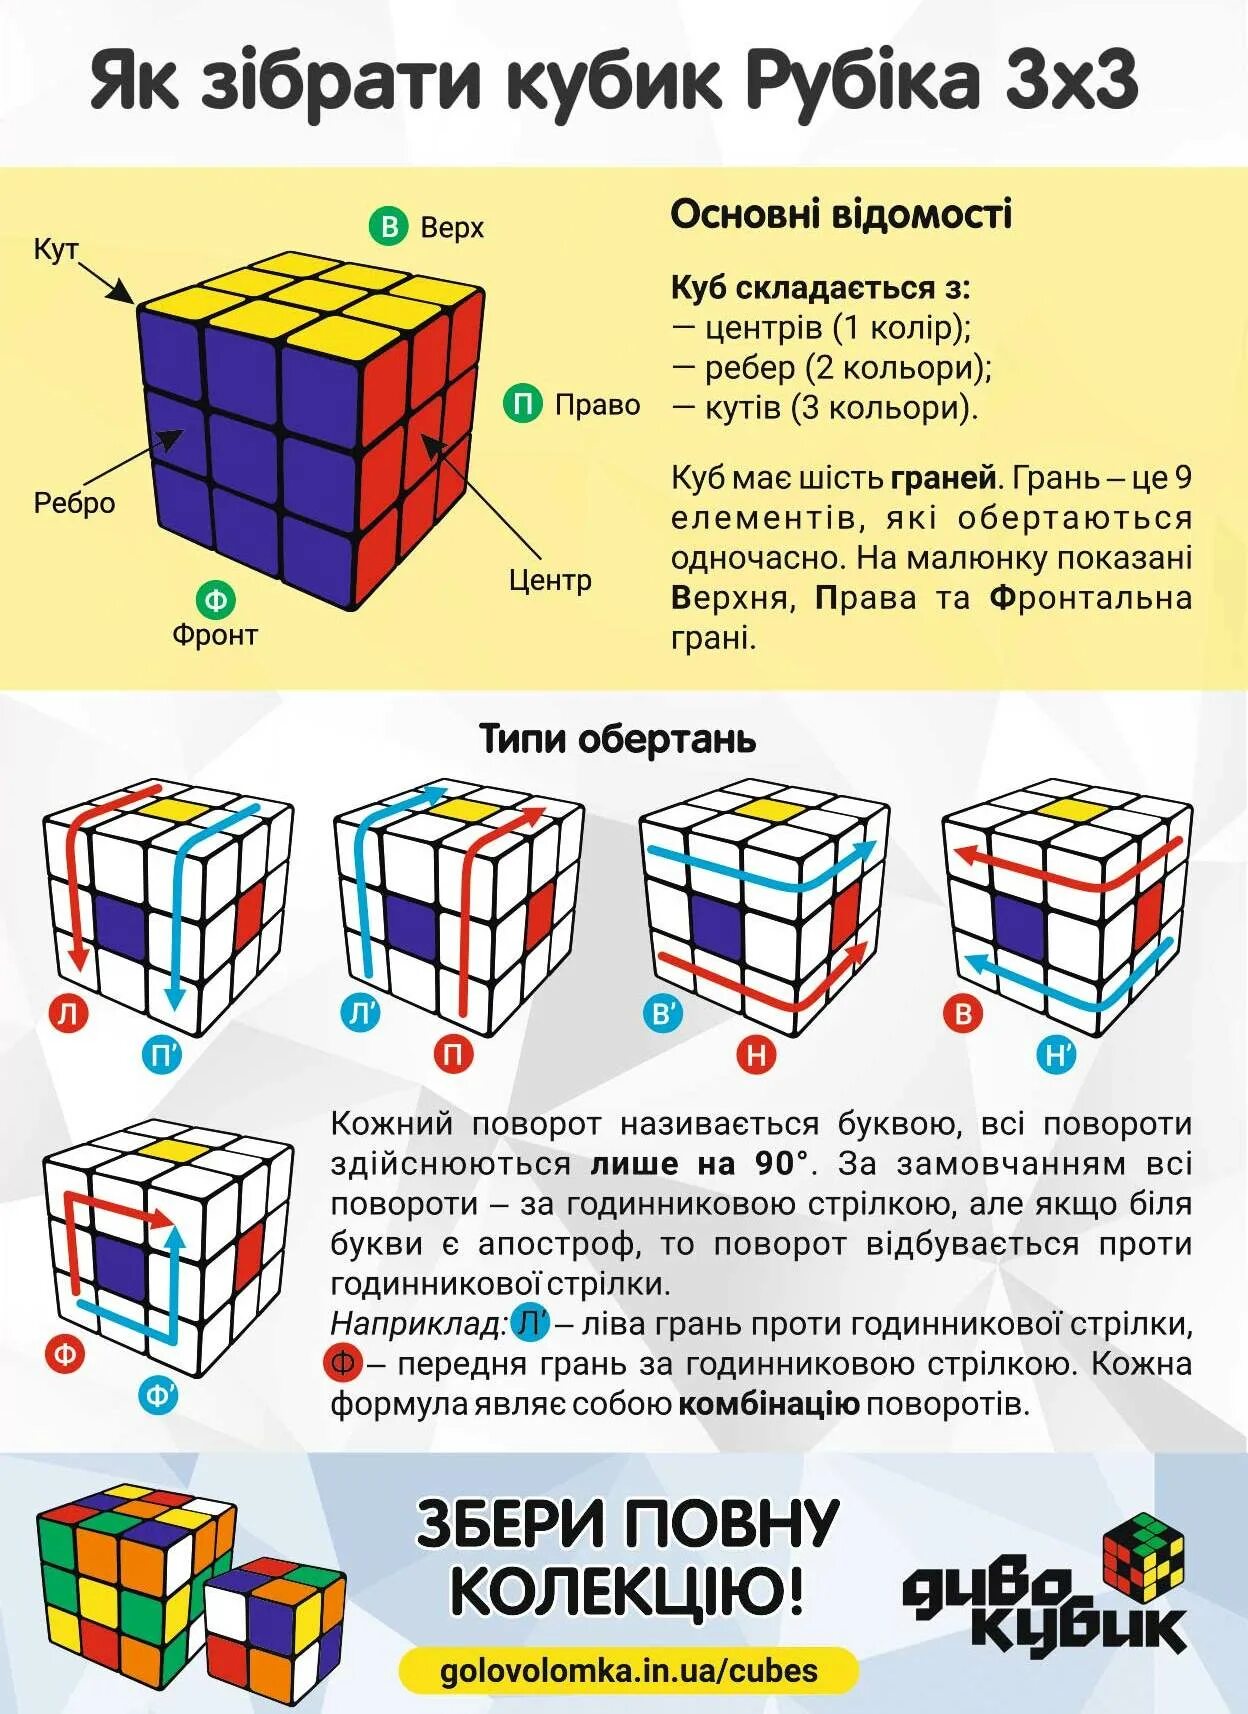 Формула кубика рубика 3х3. Алгоритмы по сборке кубика Рубика 3х3 для начинающих. Формулы кубика Рубика 3х3 для начинающих. Комбинации кубика Рубика 3х3. Кубик-Рубика 3х3 сборка пошагово.